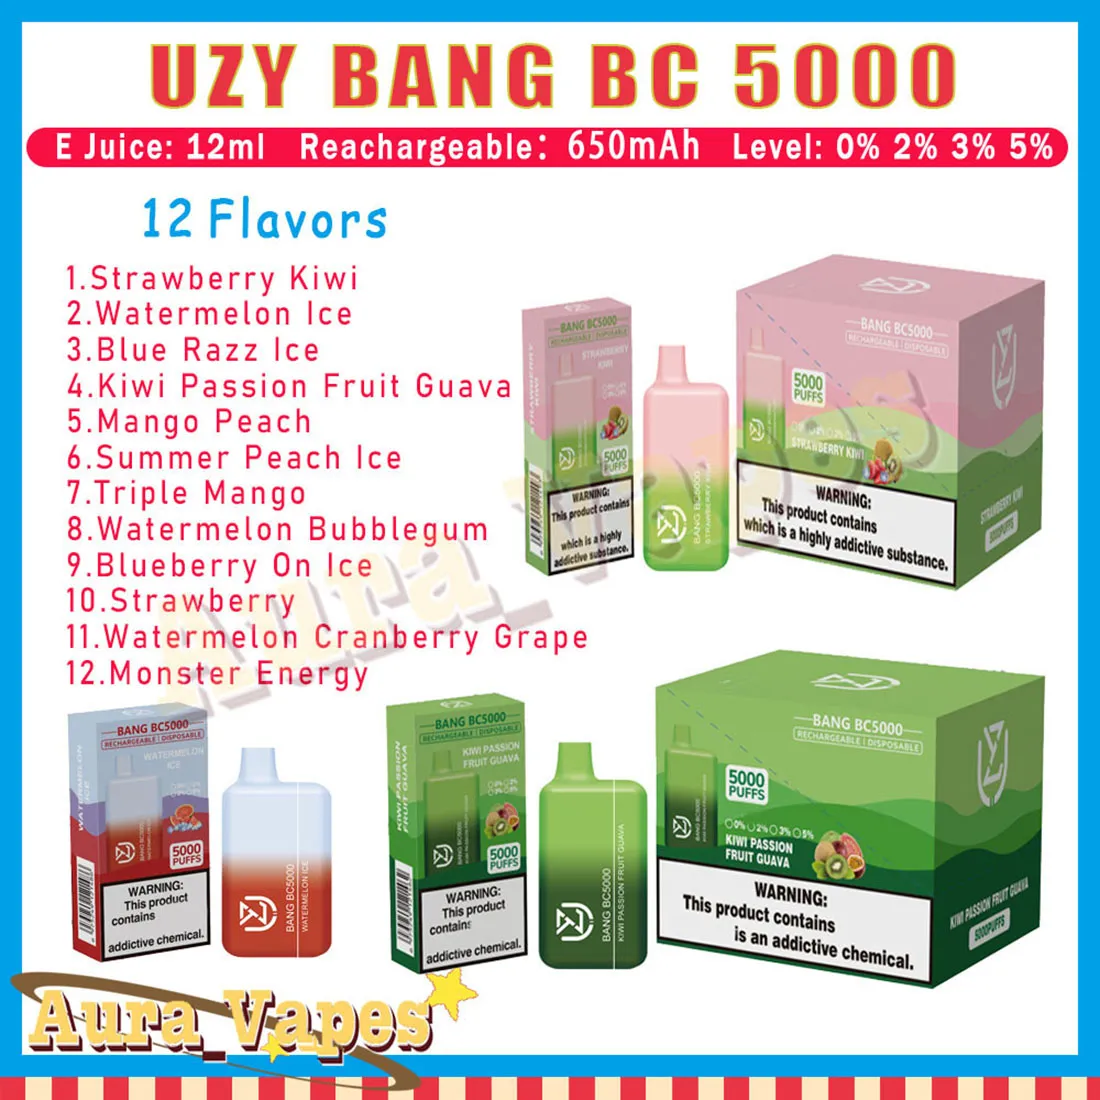 UZY BANG BC5000 Puffs monouso Vape Pen 10ml Pod preriempito Mesh Coil Puffs 5000 Sigaretta elettronica ricaricabile Aria condizionata 0% 2% 3% 5%